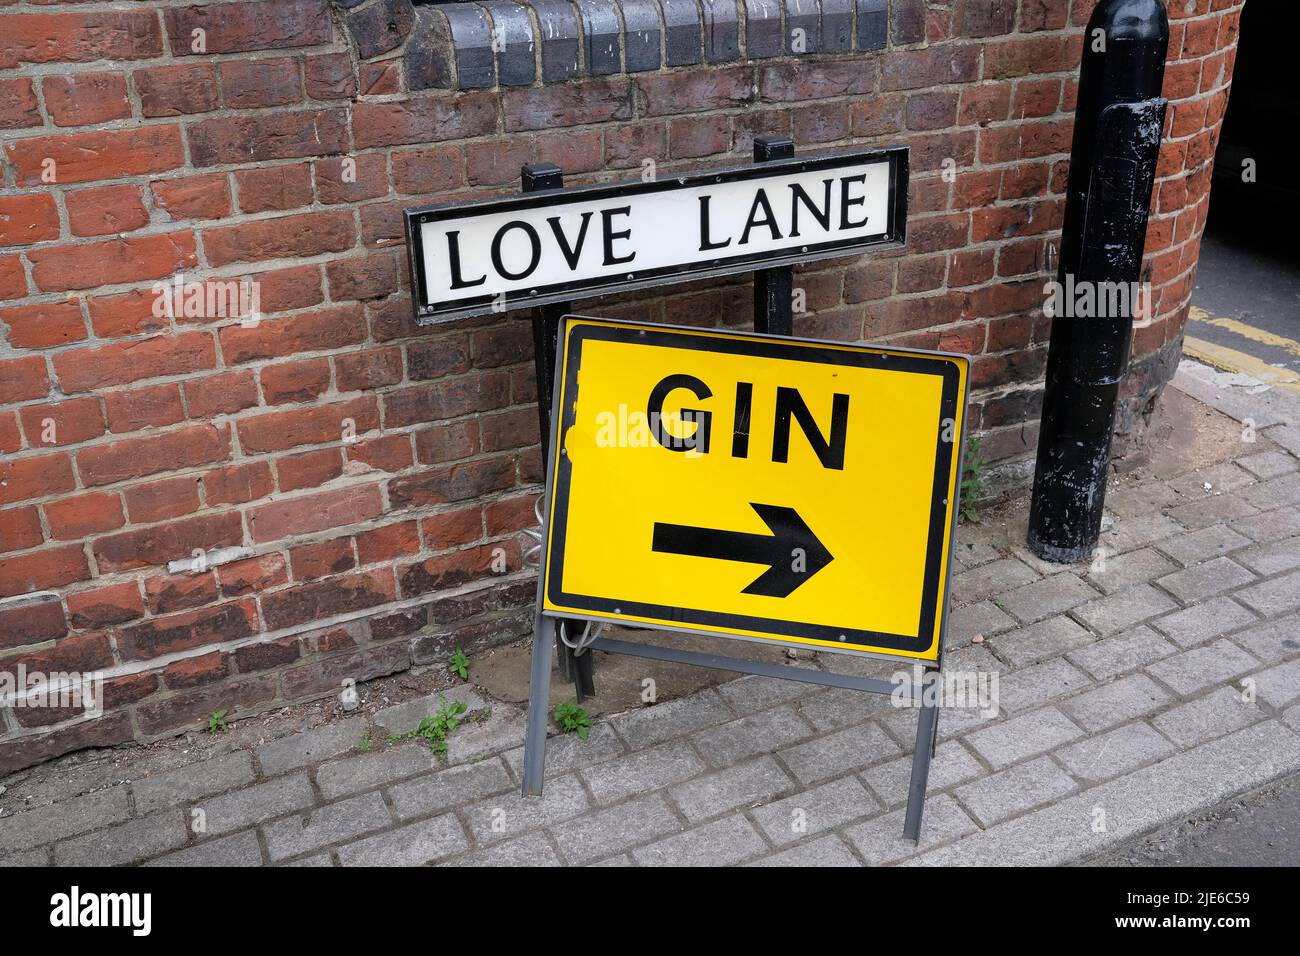 Love Lane in der Stadt canterbury, ein gelbes Schild mit dem Wort Gin angezeigt, East kent, großbritannien juni 2022 Stockfoto